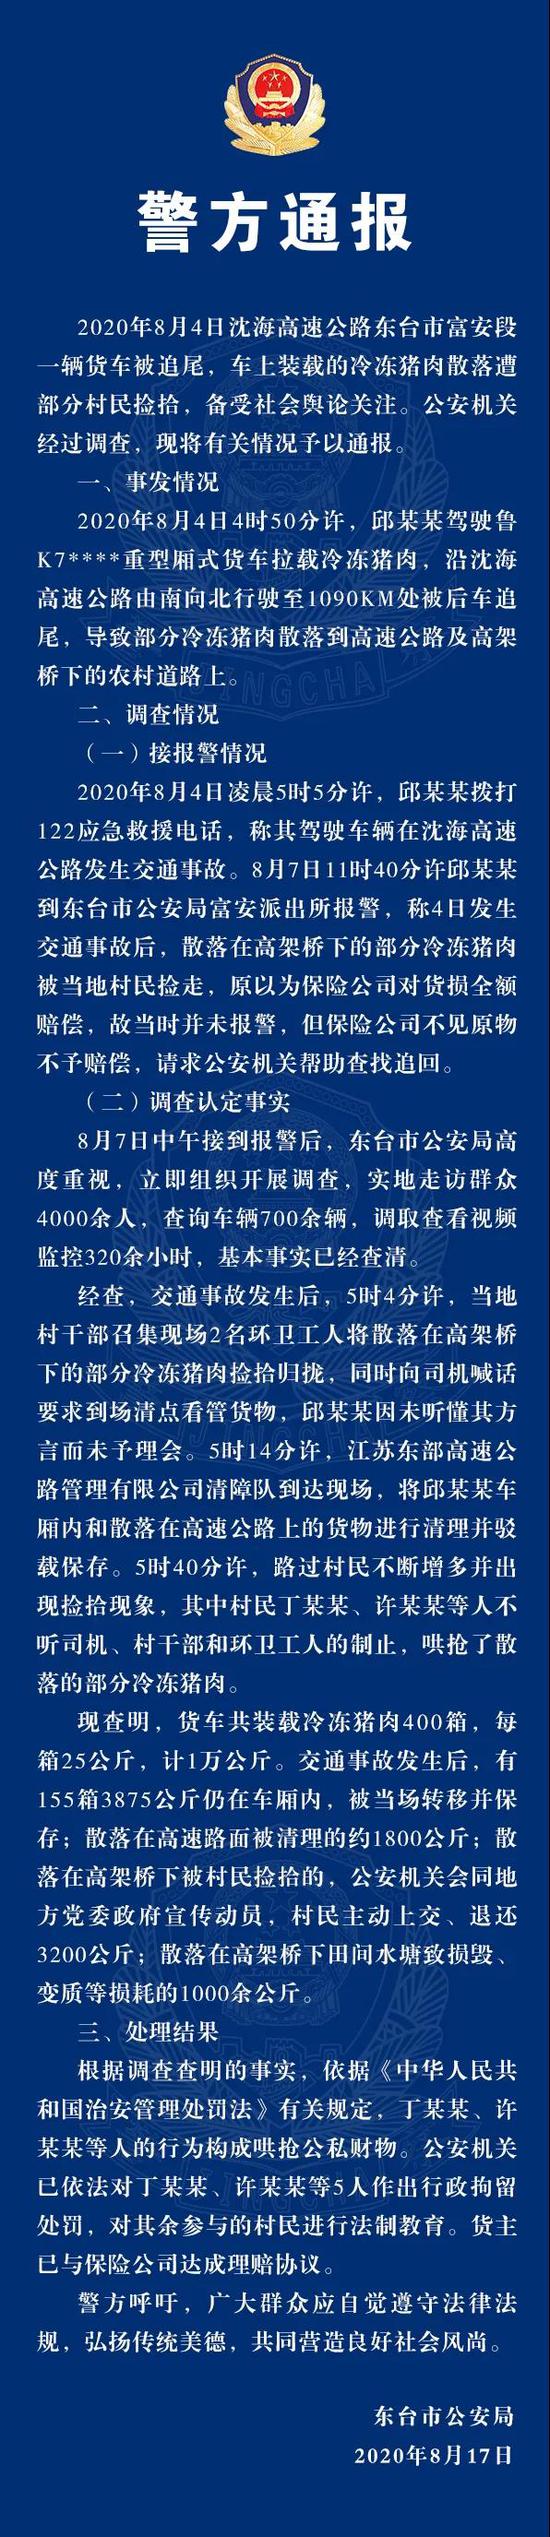 江苏东台警方通报“交通事故后猪肉遭哄抢”:5人被拘